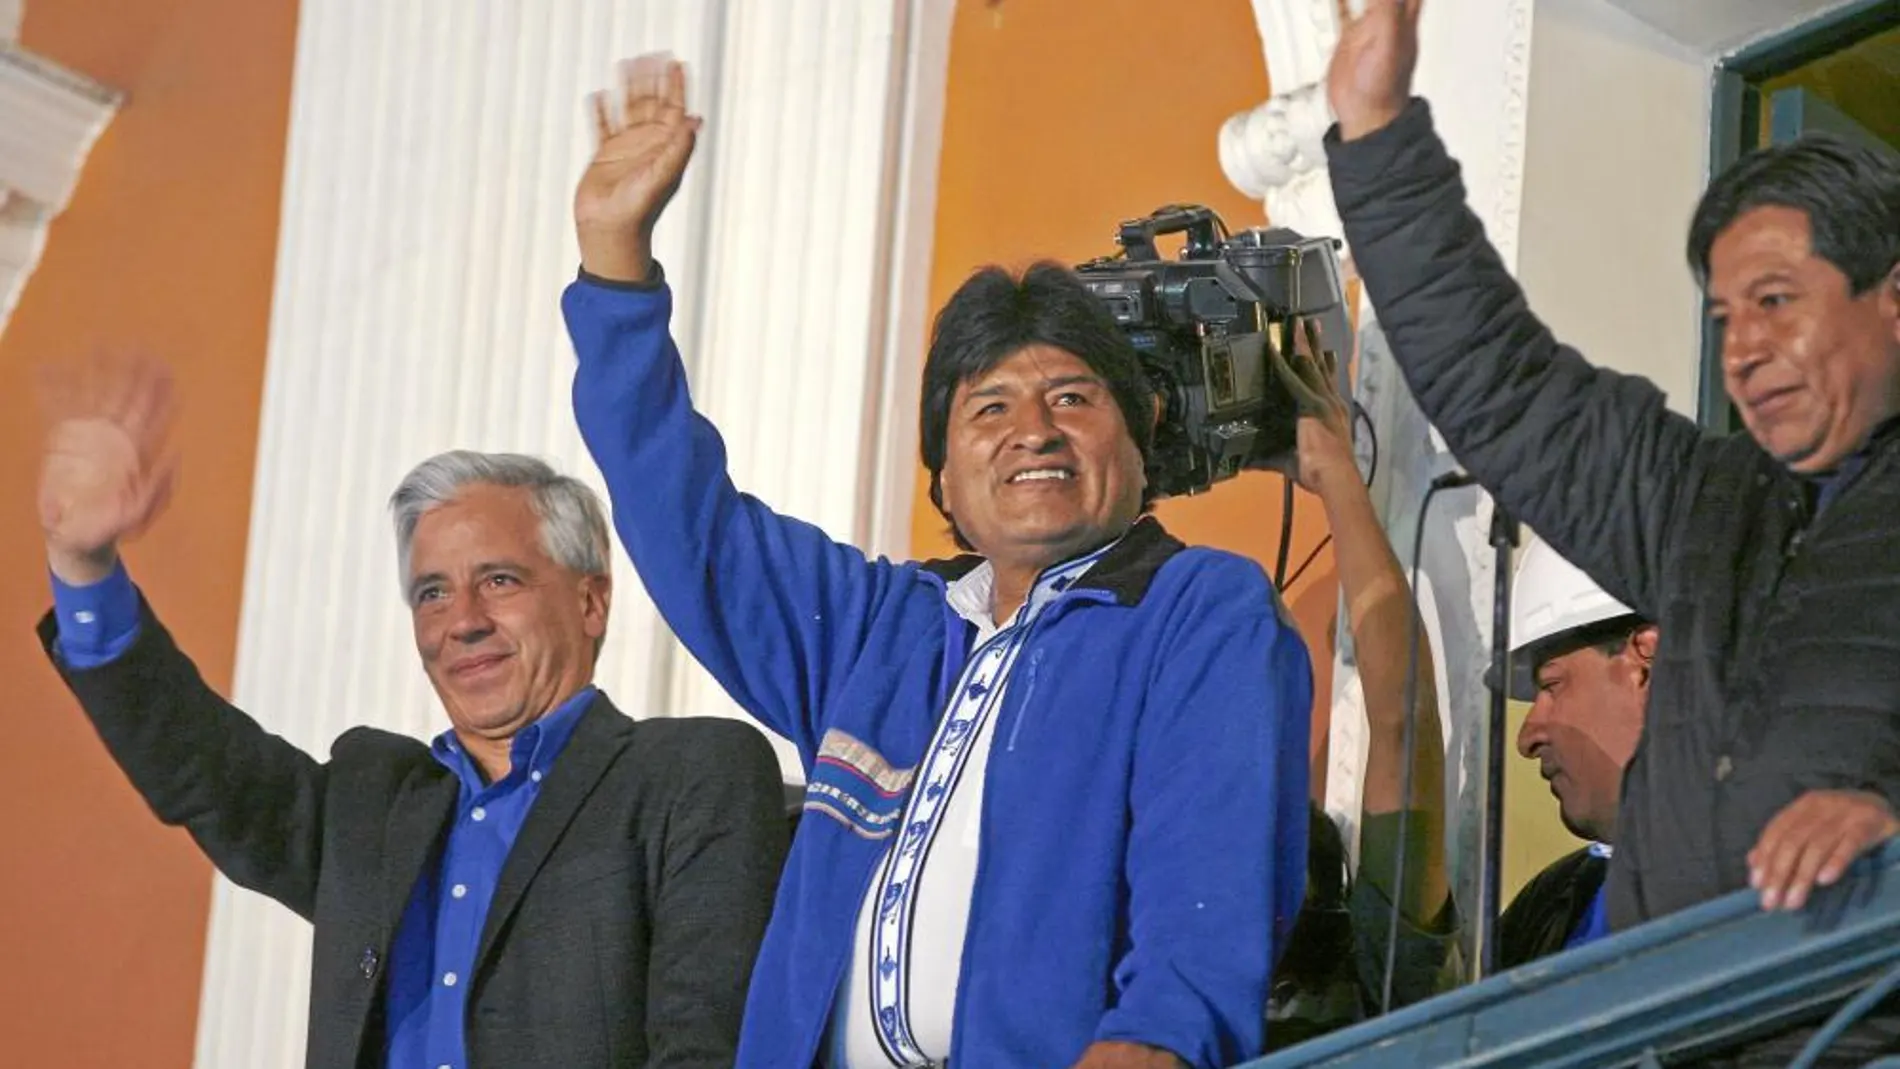 El presidente de Bolivia, Evo Morales, en el centro, salió a saludar al balcón presidencial en La Paz después de su victoria electoral